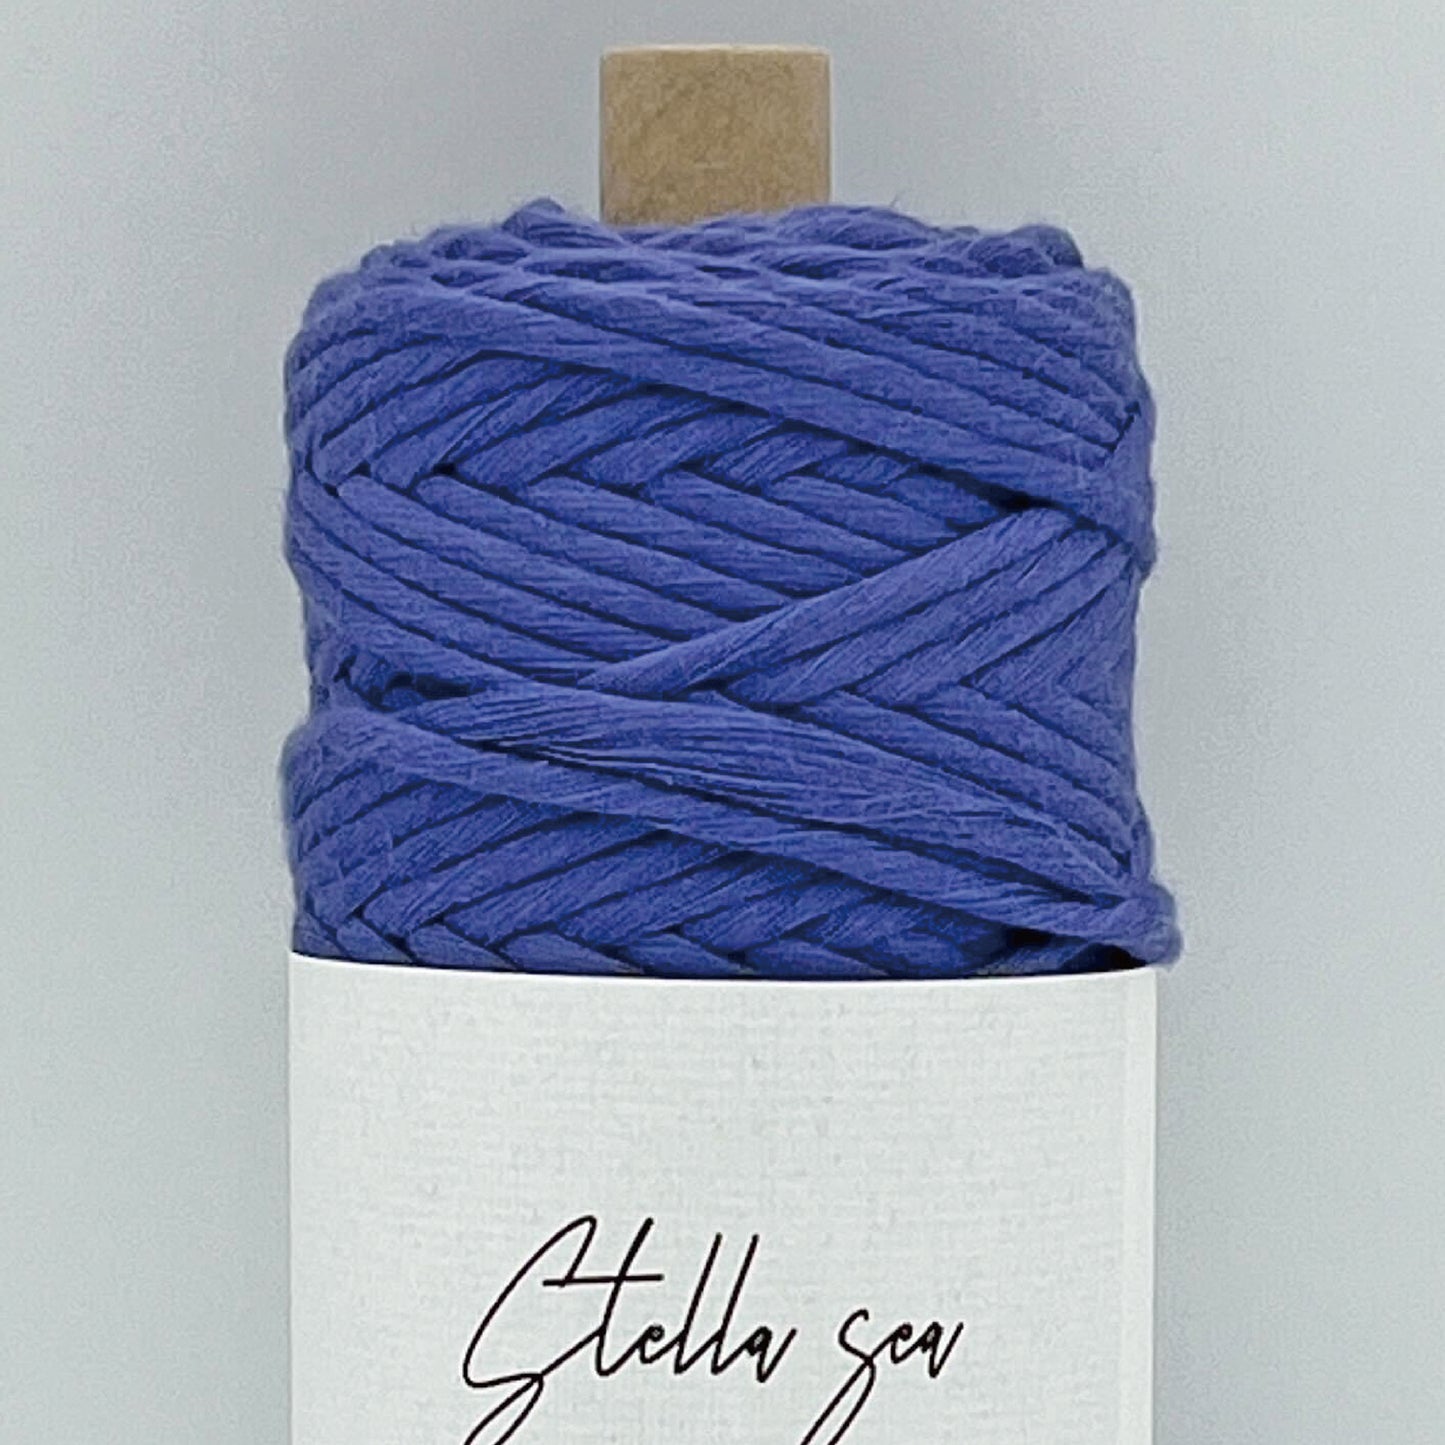 0.75 毫米/本色/550 米（约 250 克）单股公平贸易有机棉线，用于编织日本制造的经纱